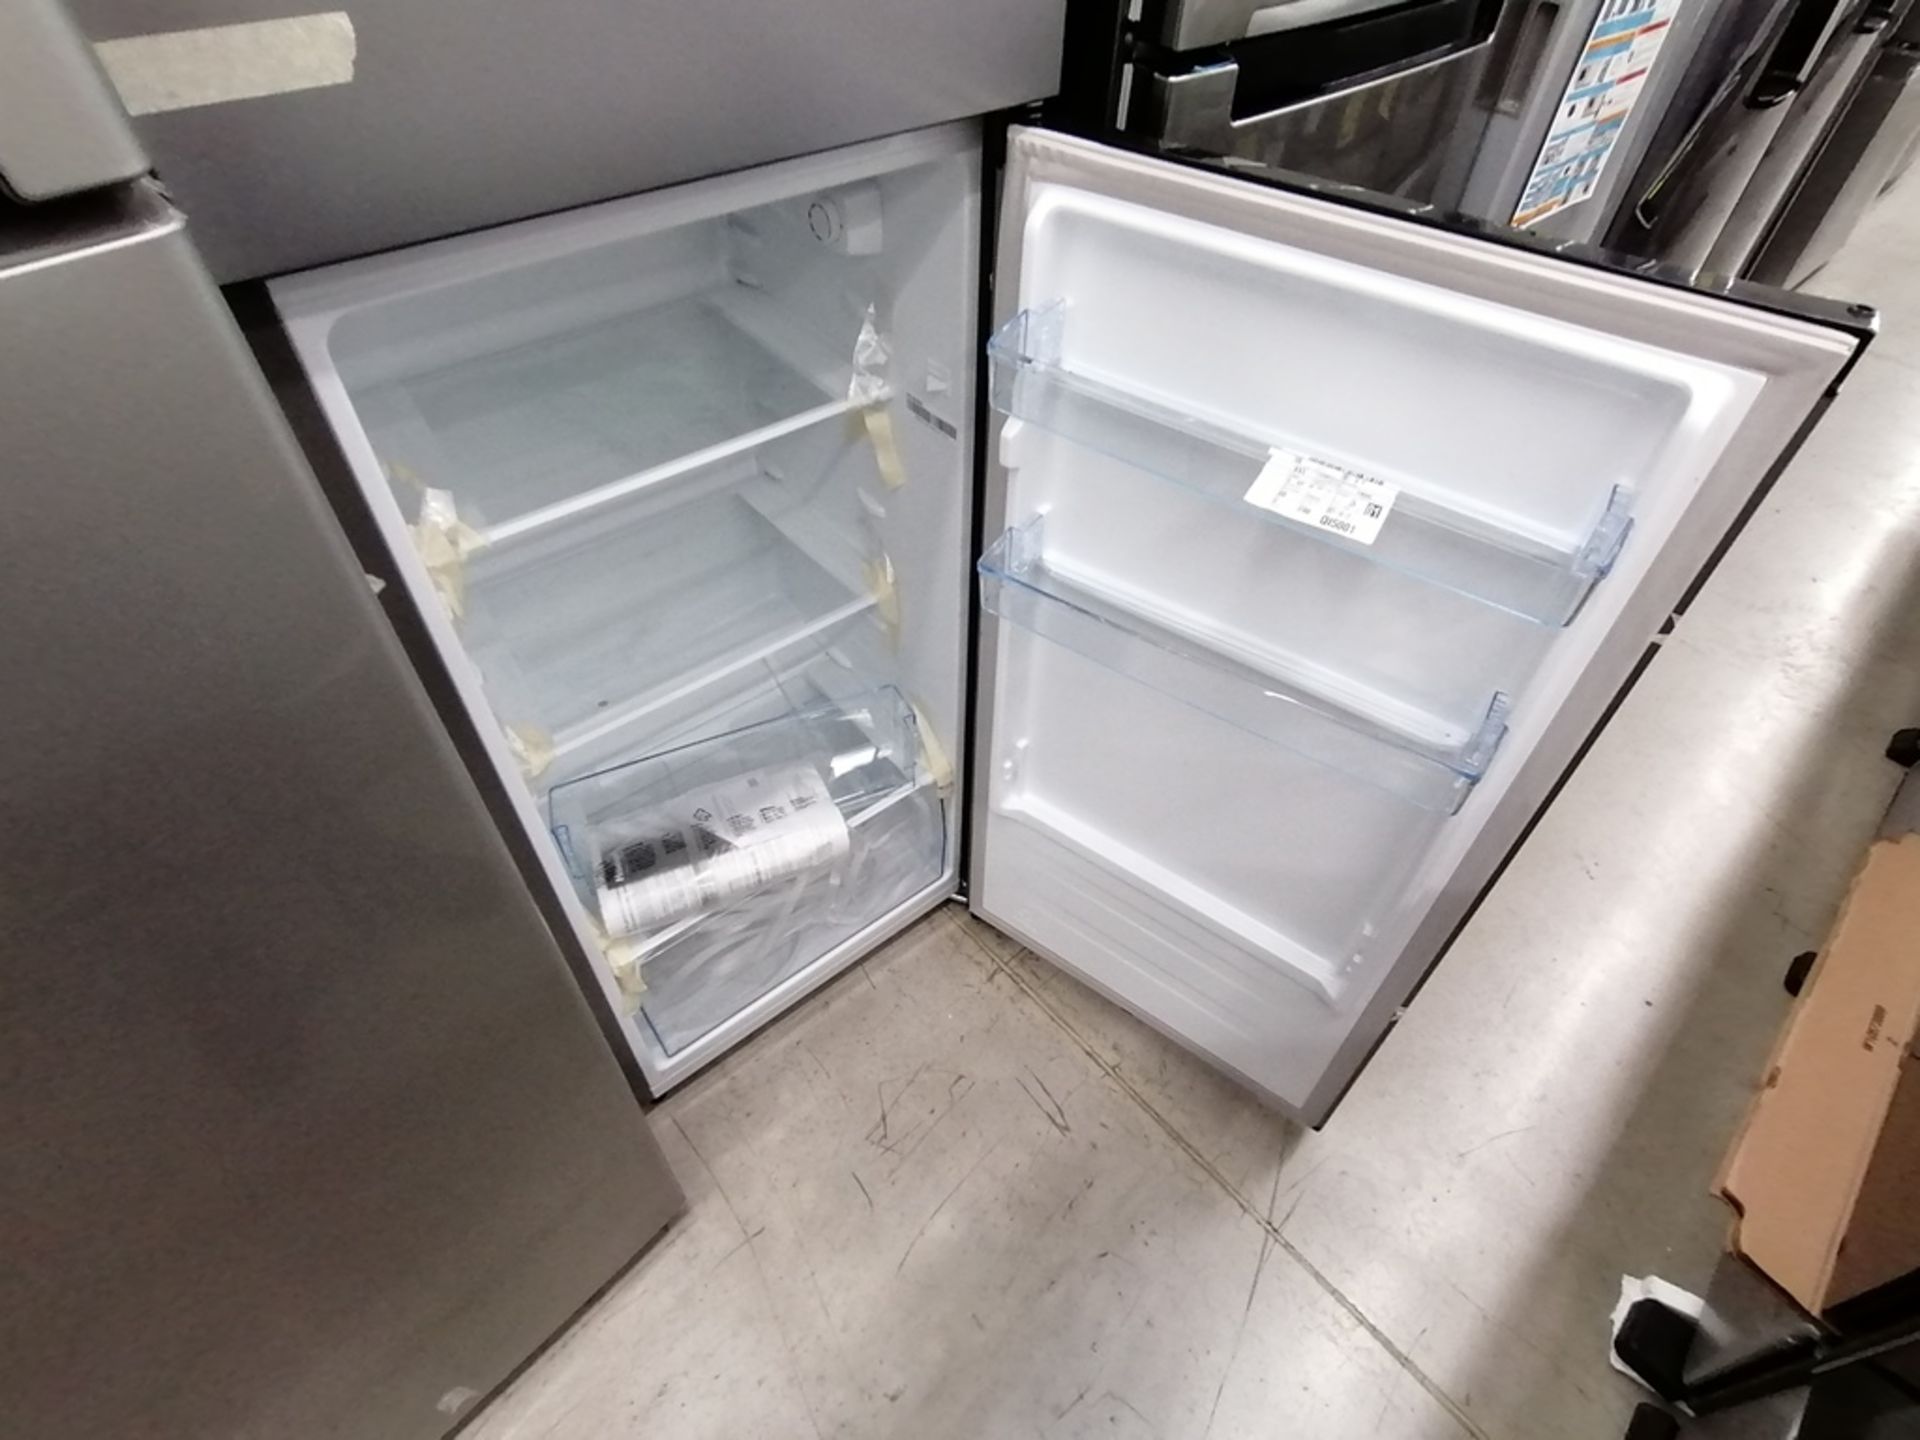 Lote de 2 refrigeradores incluye: 1 Refrigerador, Marca Winia, Modelo DFR25210GN, Serie MR21ZN08401 - Image 14 of 15